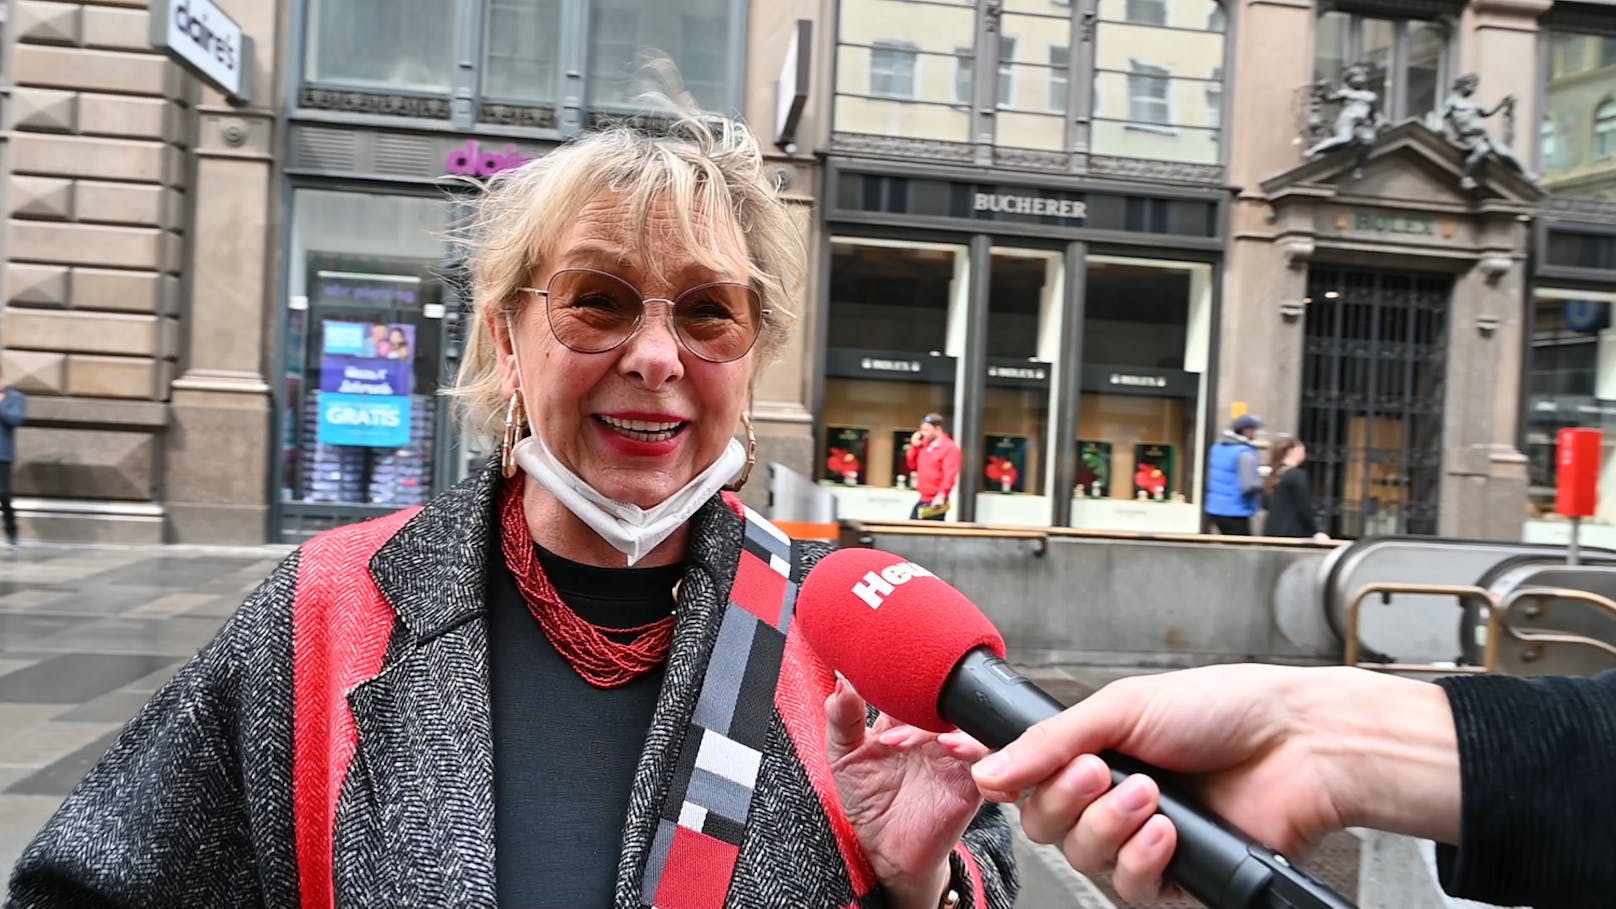 Jolanda (70): "Hurra, hurra, ich möchte ins Theater, ins Kabarett, ich möchte überall hingehen!"